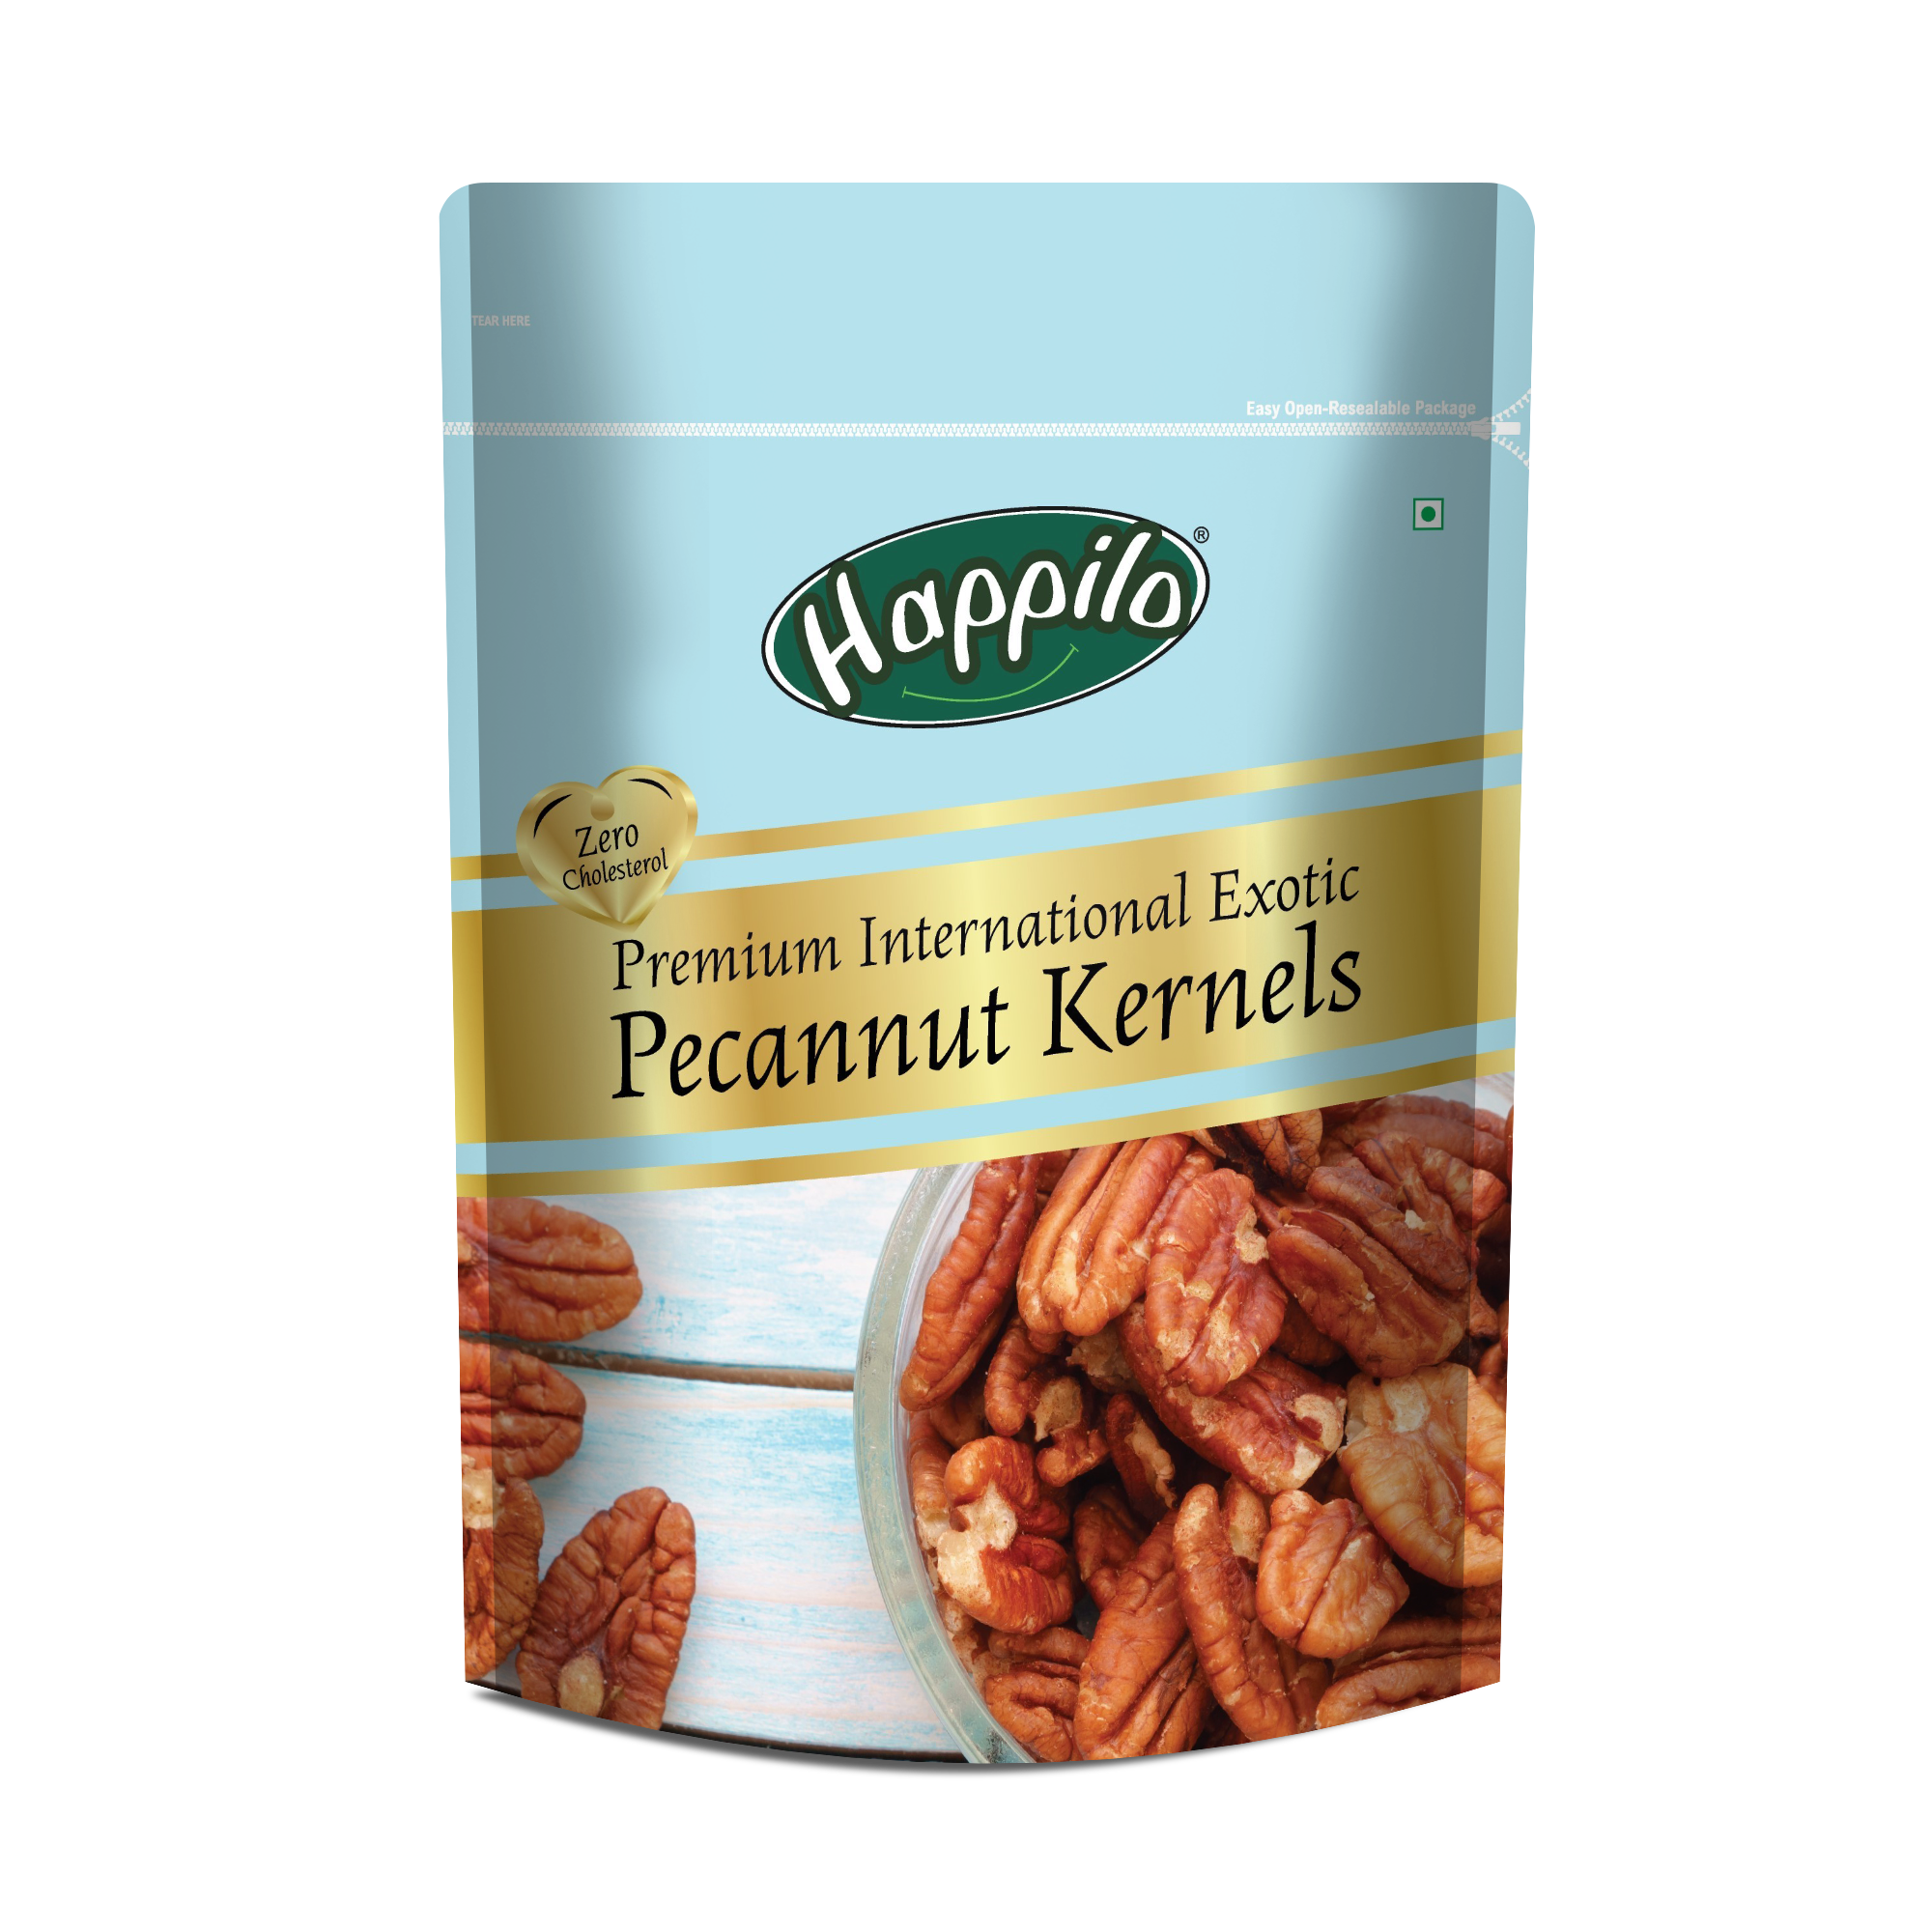 Happilo Premium International Exotic Pecannut Kernels